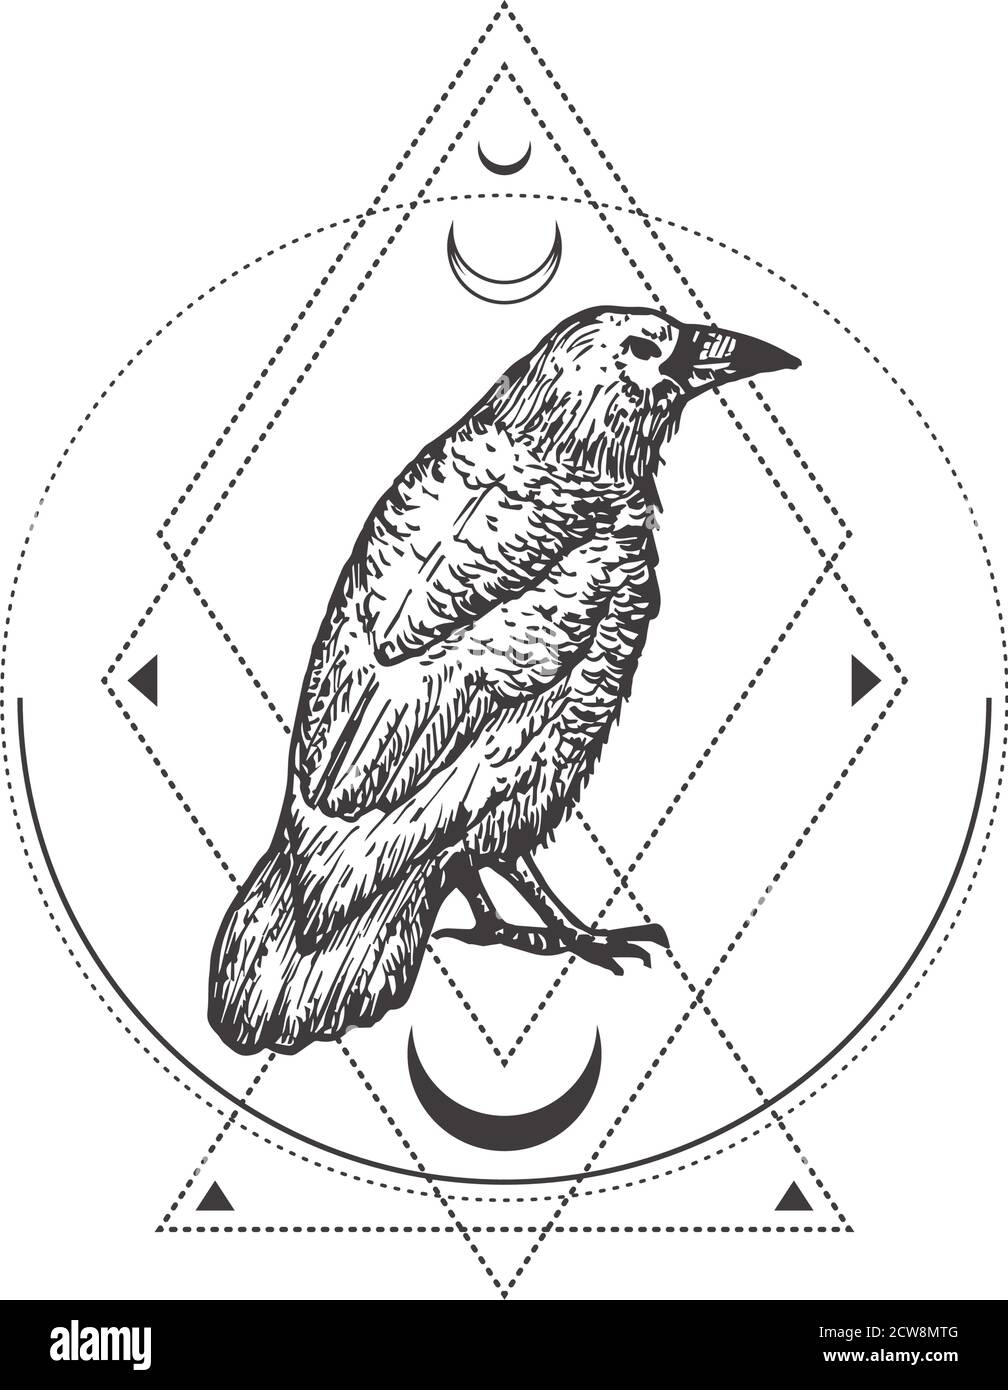 Abstraktes Okkult-Symbol, Vintage-Logo oder Tattoo-Vorlage. Handgezeichnete schwarze Krähe oder Rabe Sketch Symbol und geometrische mystische Magie Ornamente und Stock Vektor